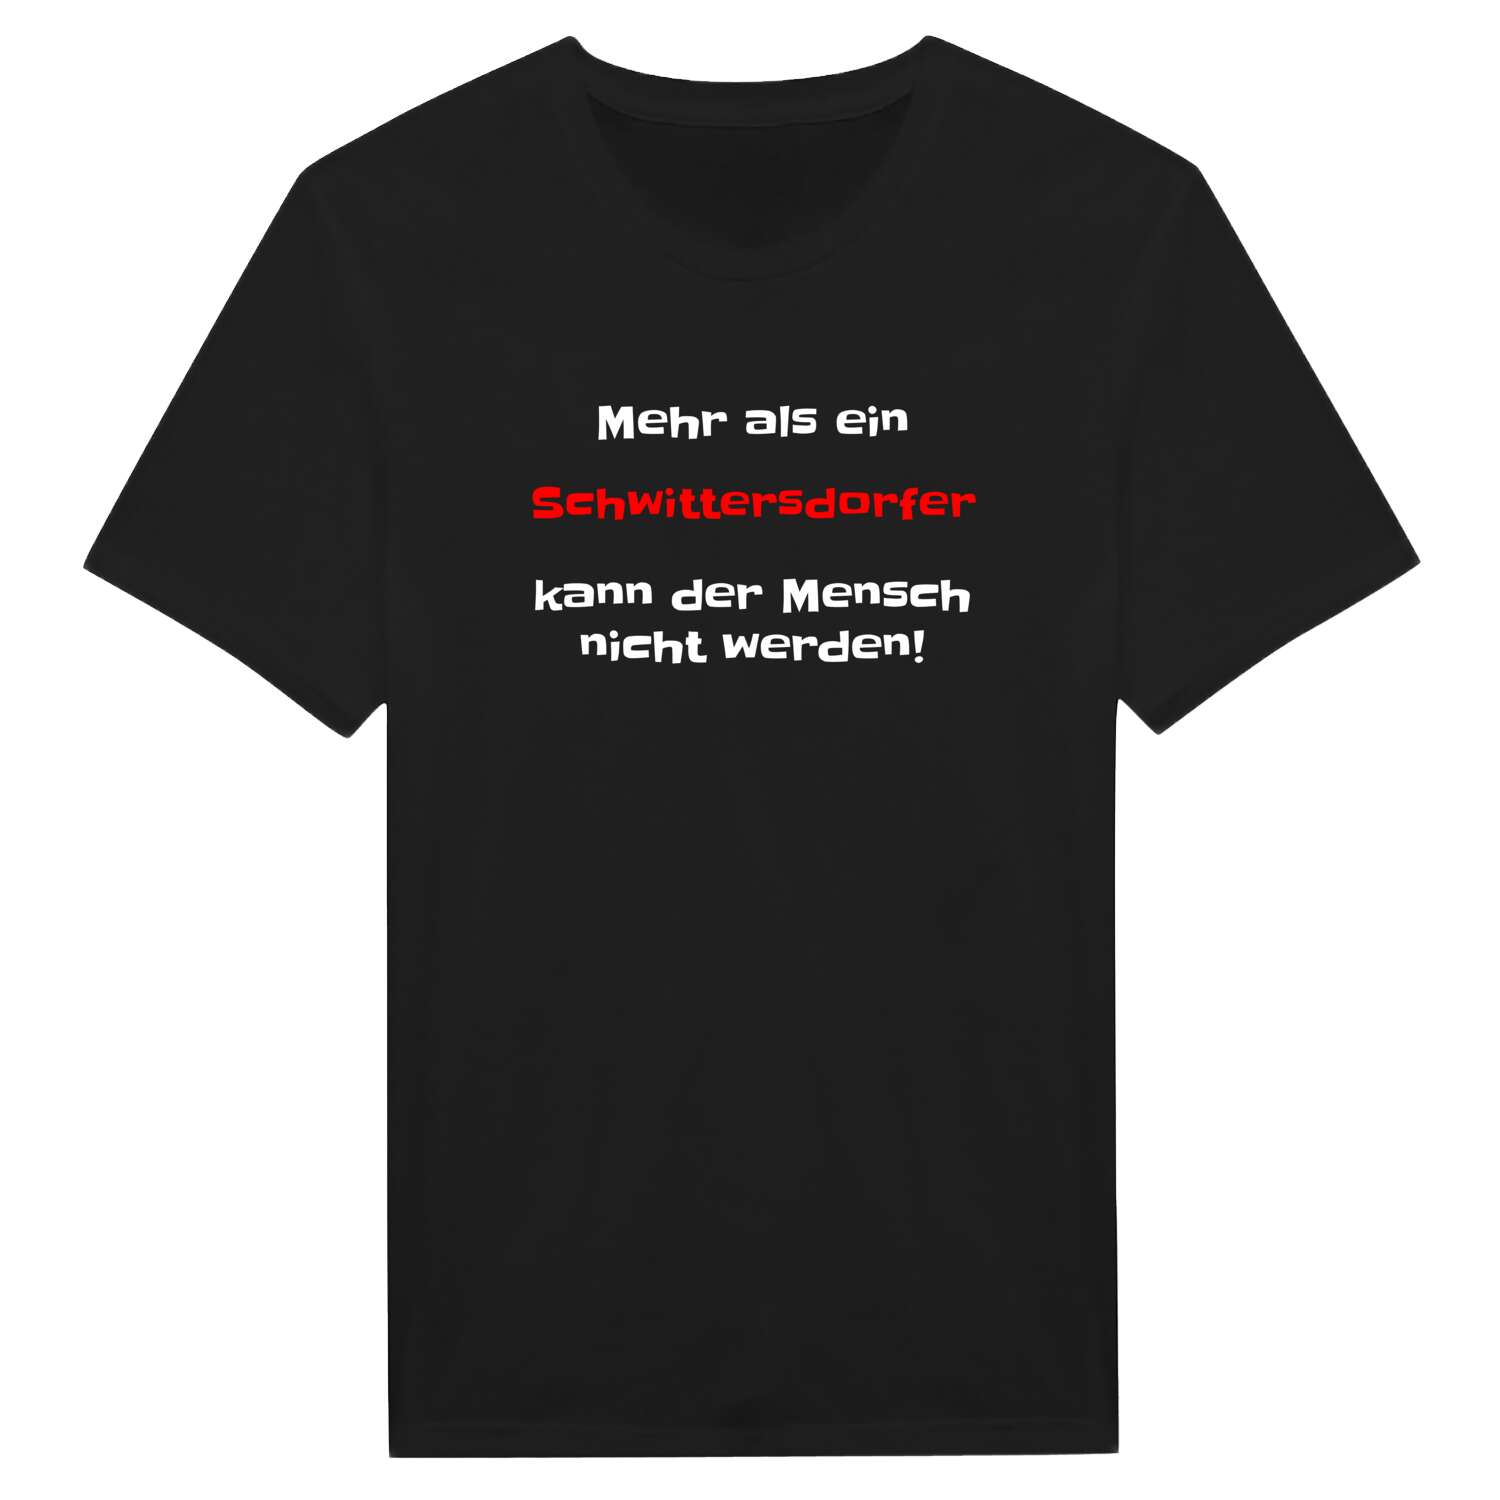 Schwittersdorf T-Shirt »Mehr als ein«